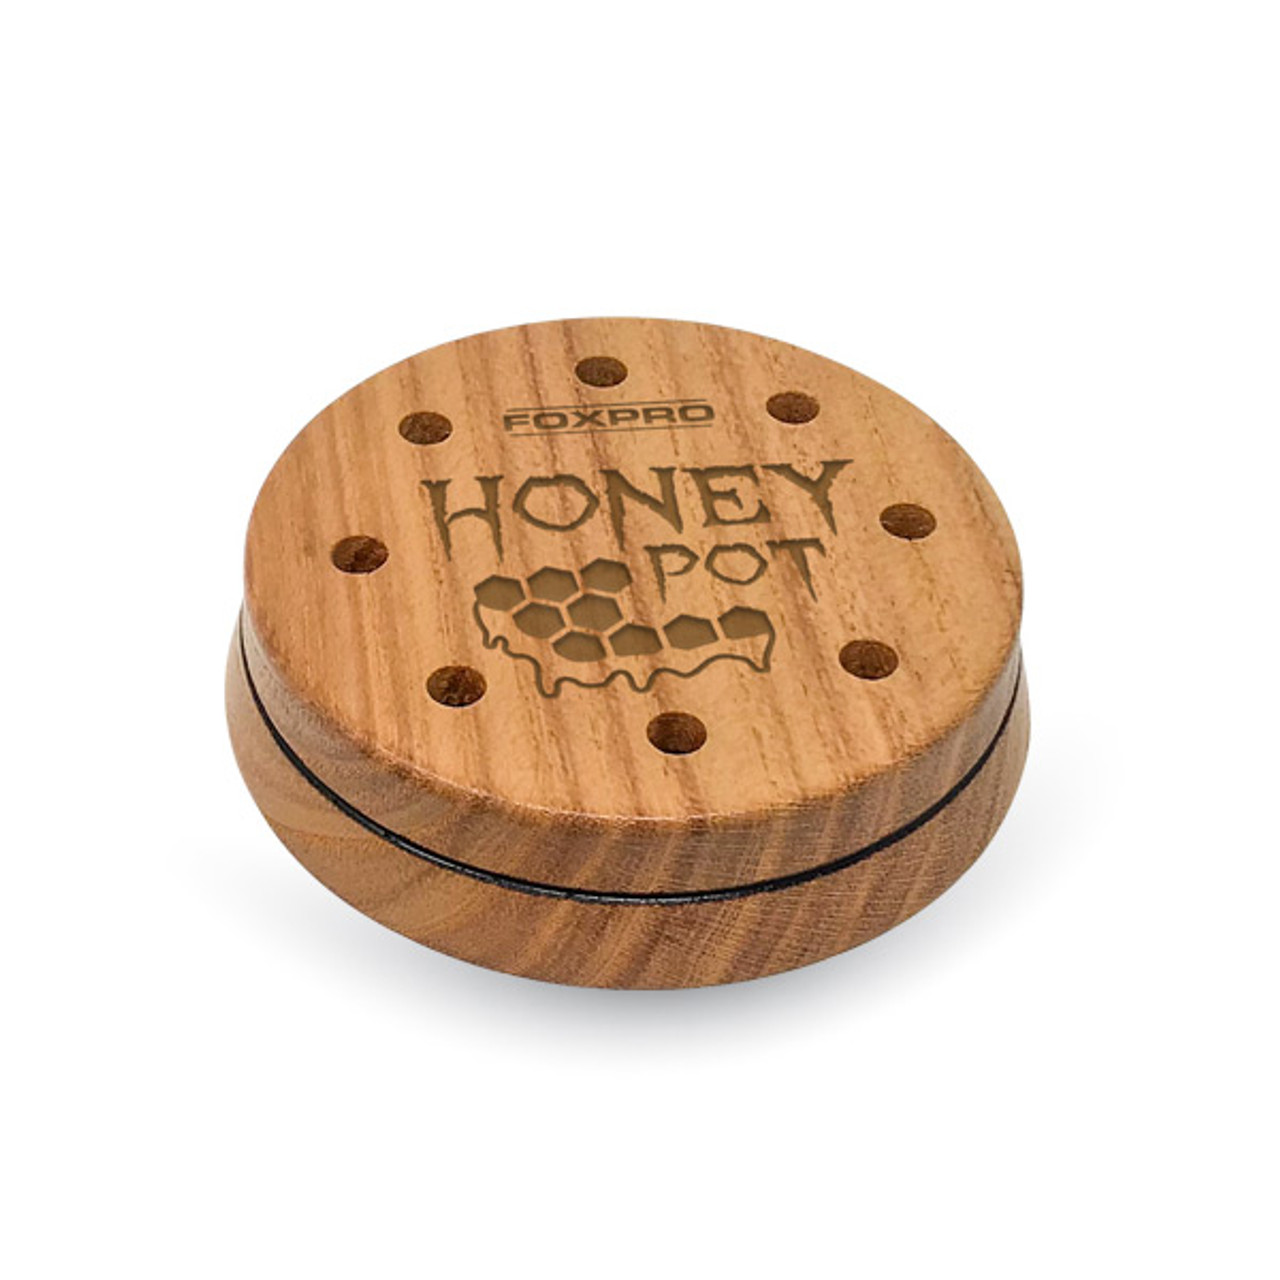 Honey Pot Slate Friction Turkey Call by FoxPro - Back